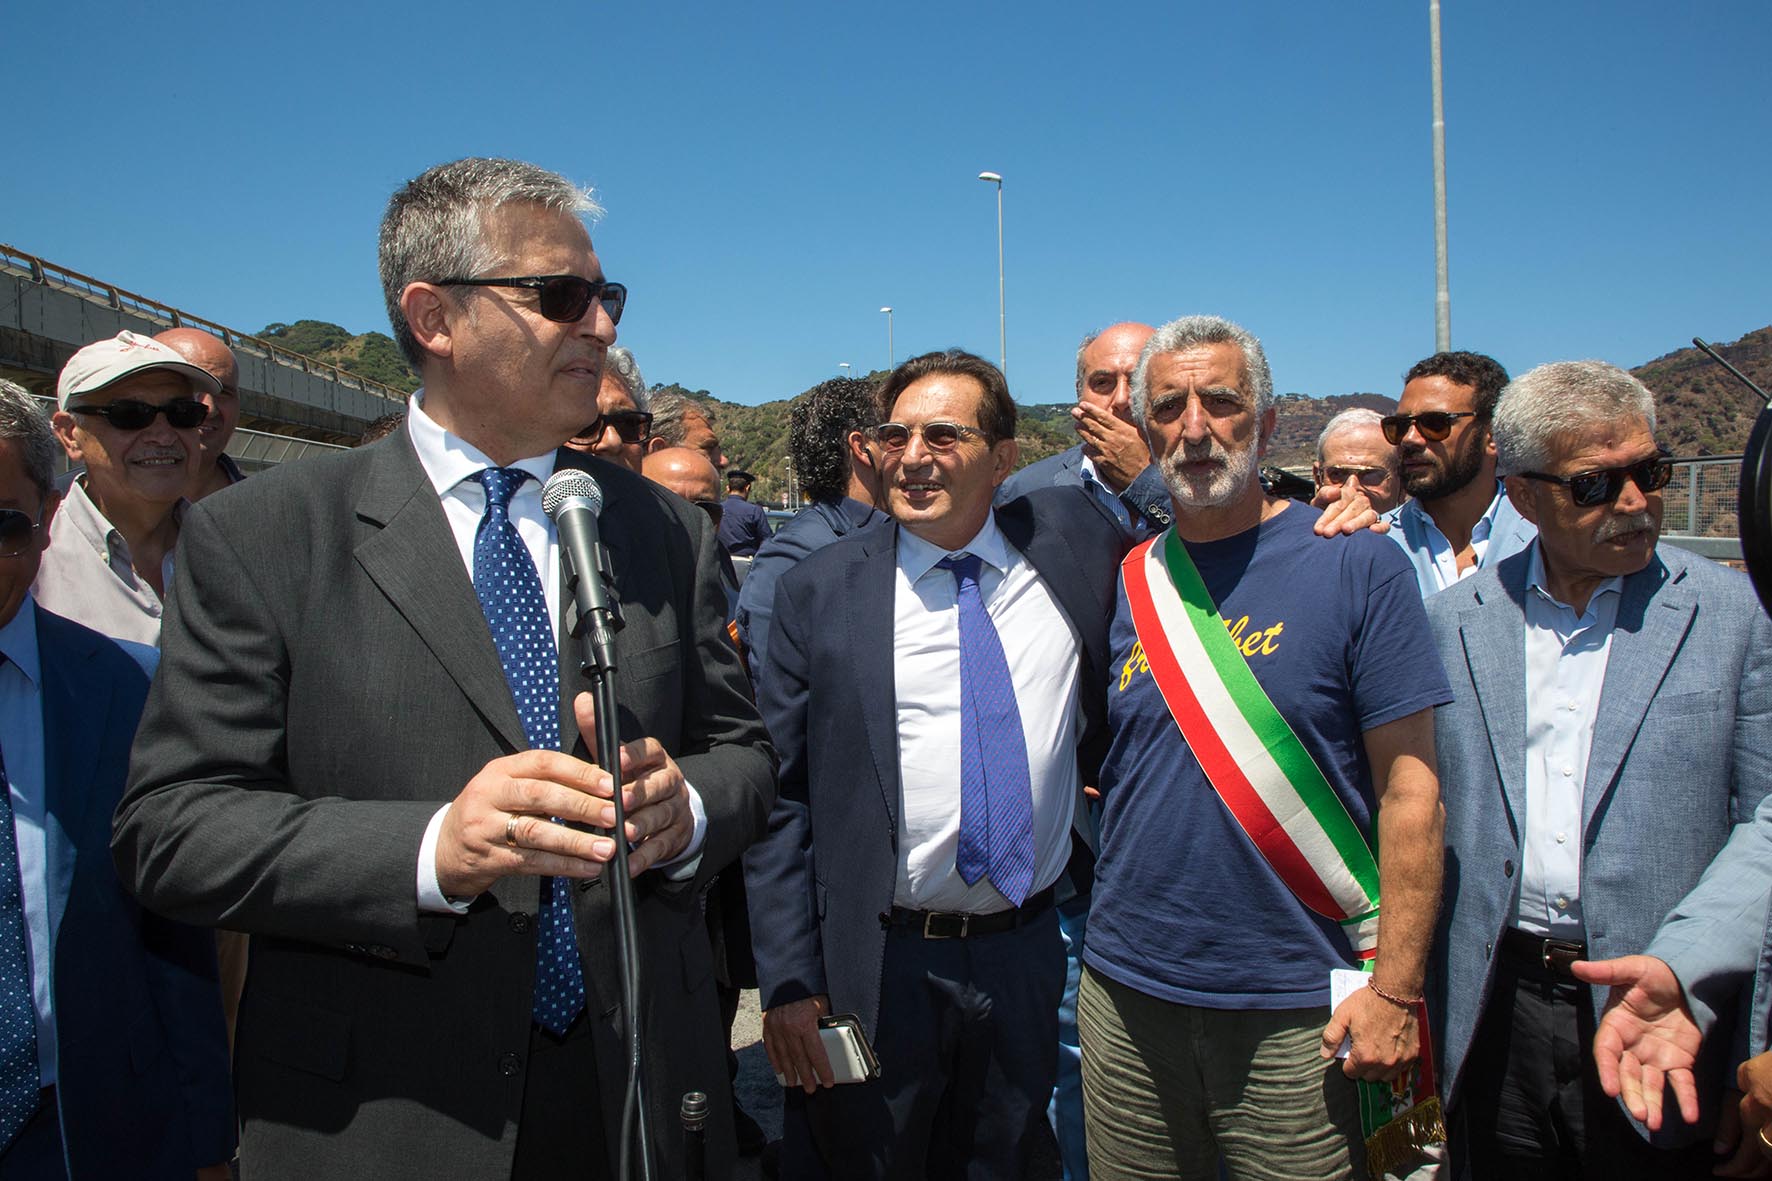 Capitale Messina ad Accorinti: "Non giudichiamo dalle magliette, fallimento su tutti i fronti"